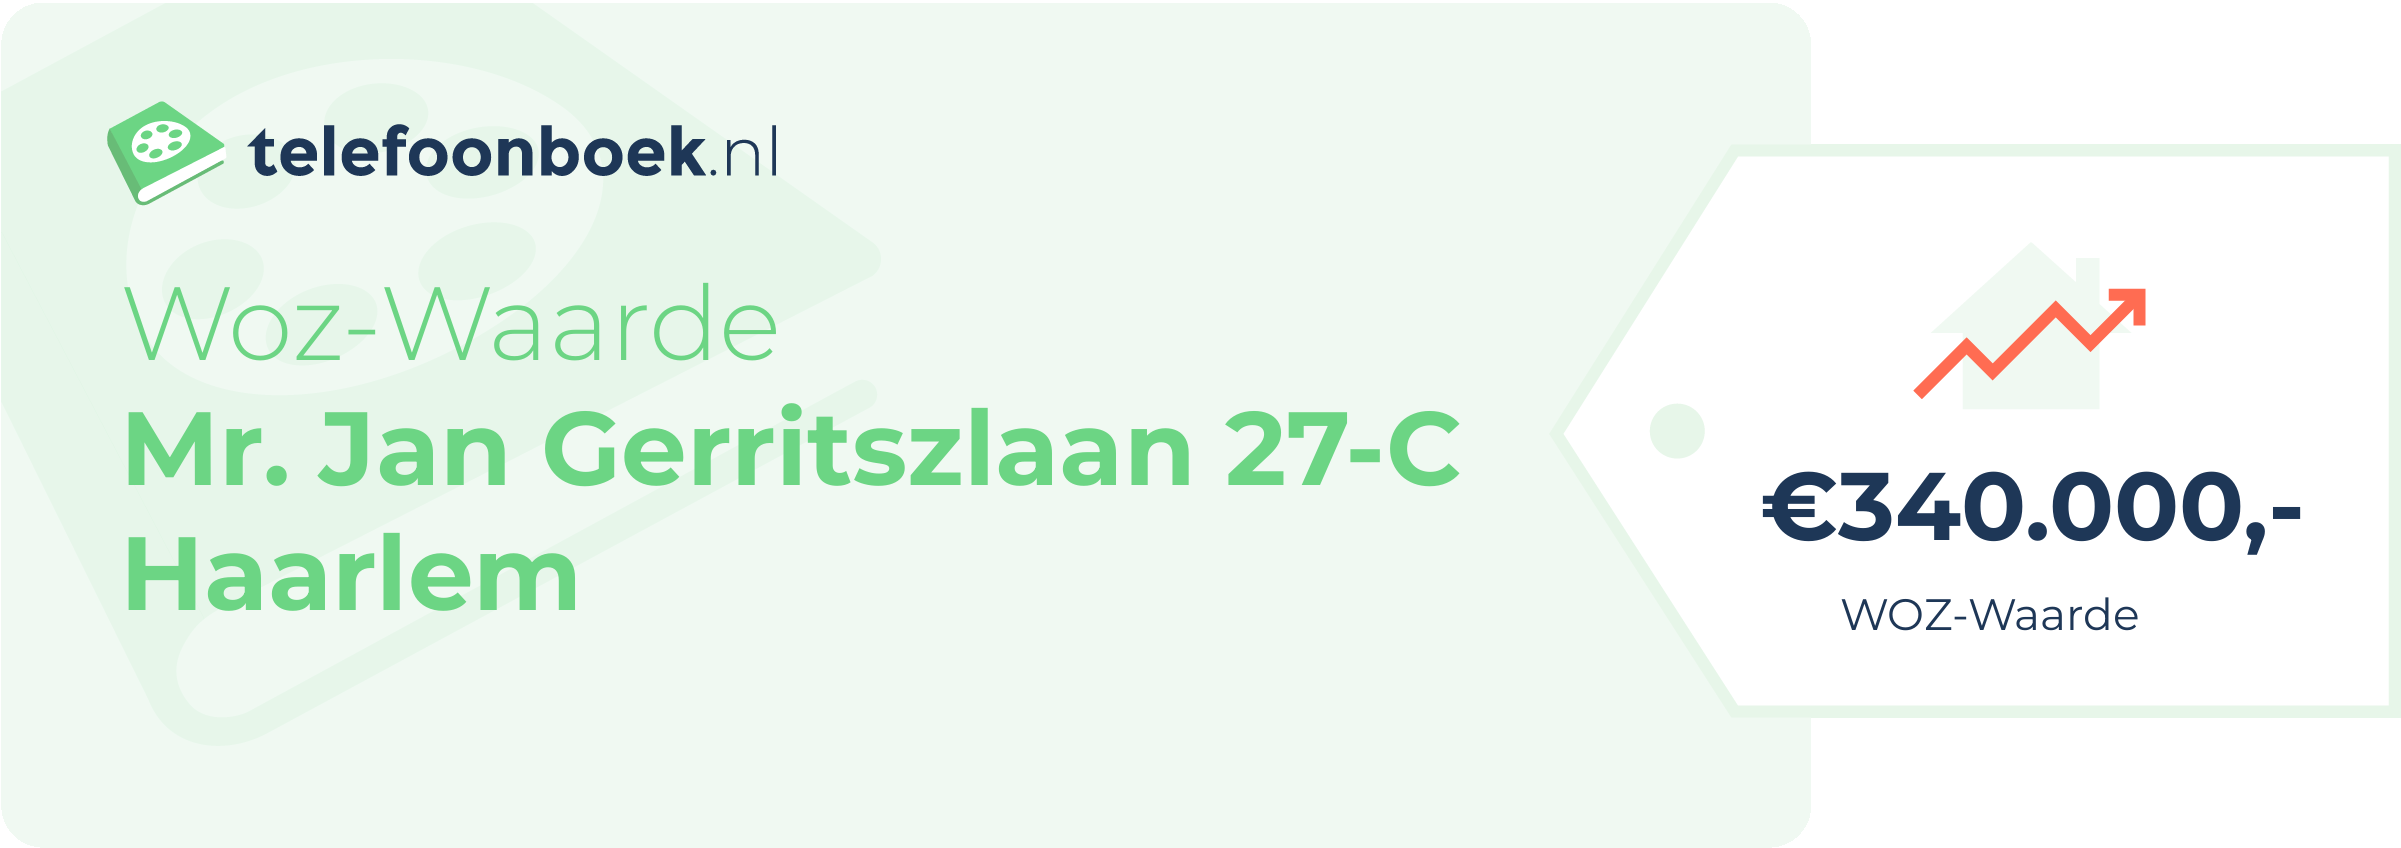 WOZ-waarde Mr. Jan Gerritszlaan 27-C Haarlem